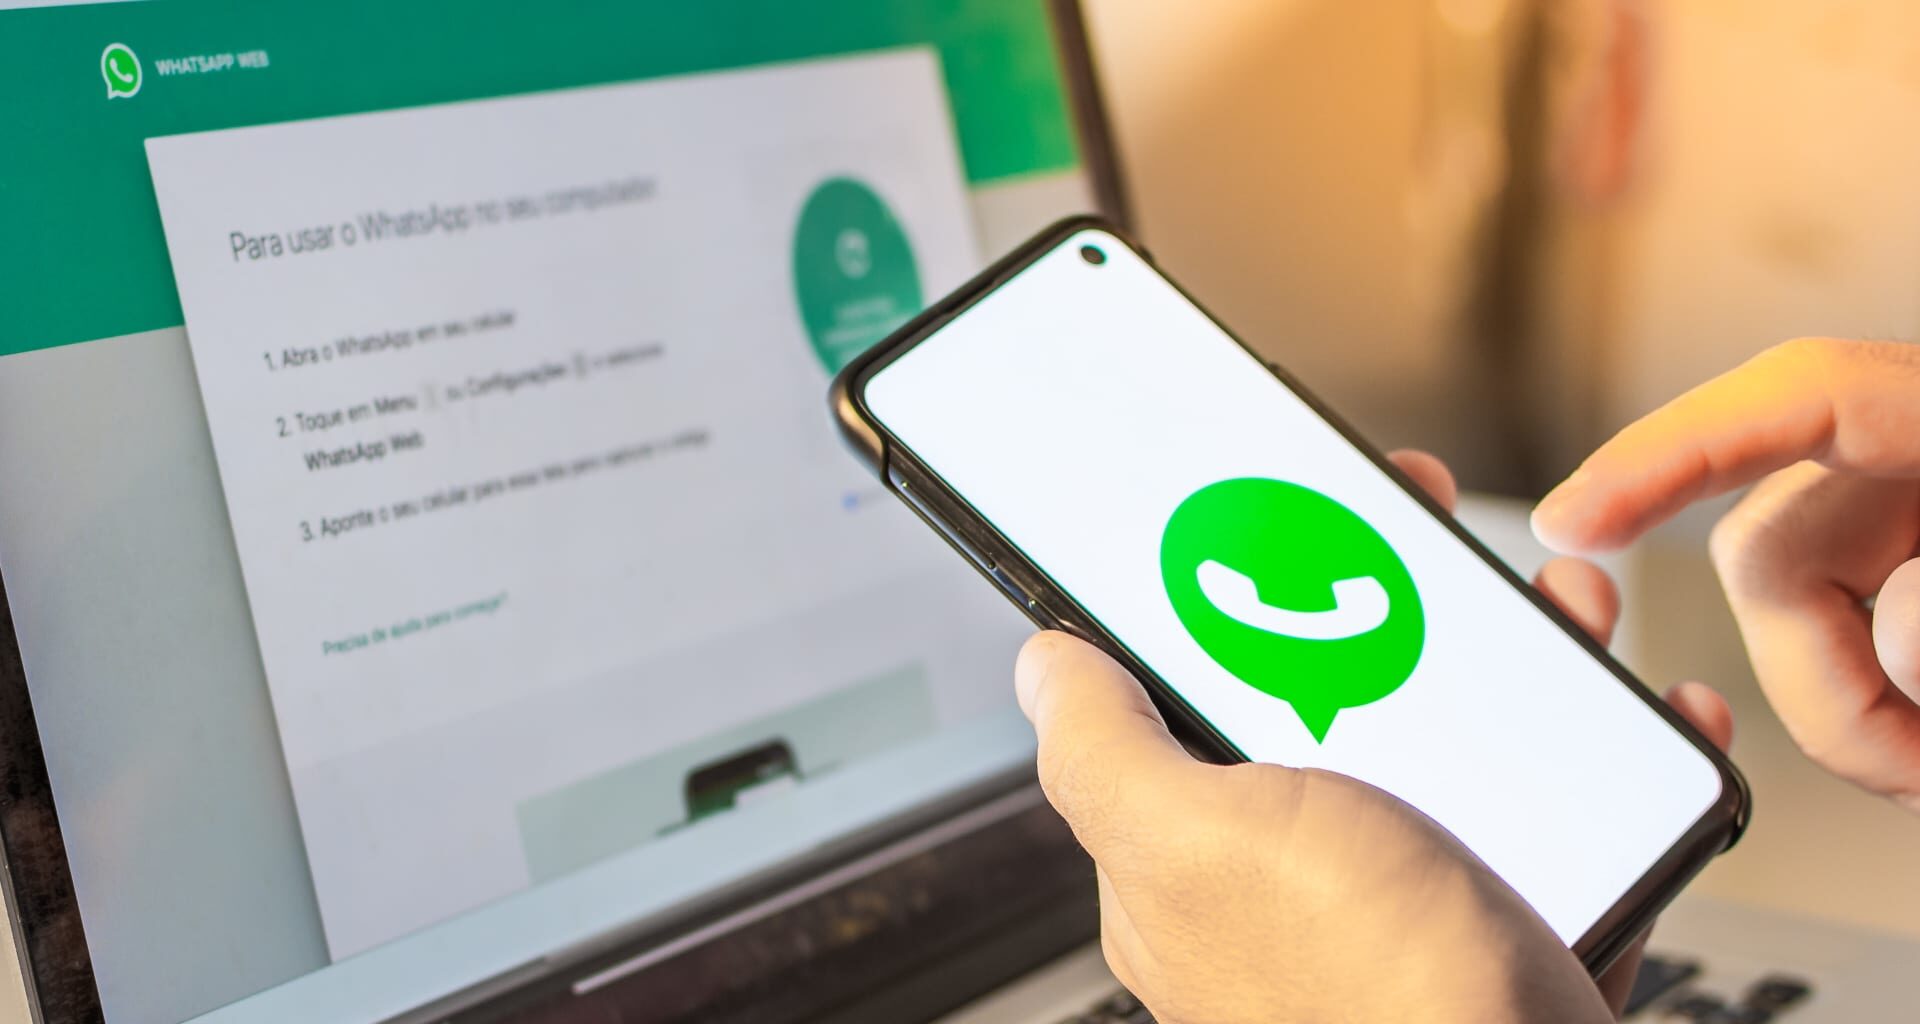 Como usar o whatsapp em mais de um aparelho ao mesmo tempo. Nova atualização possibilita que usuários usem o aplicativo em vários dispositivos sem precisar conectar à internet